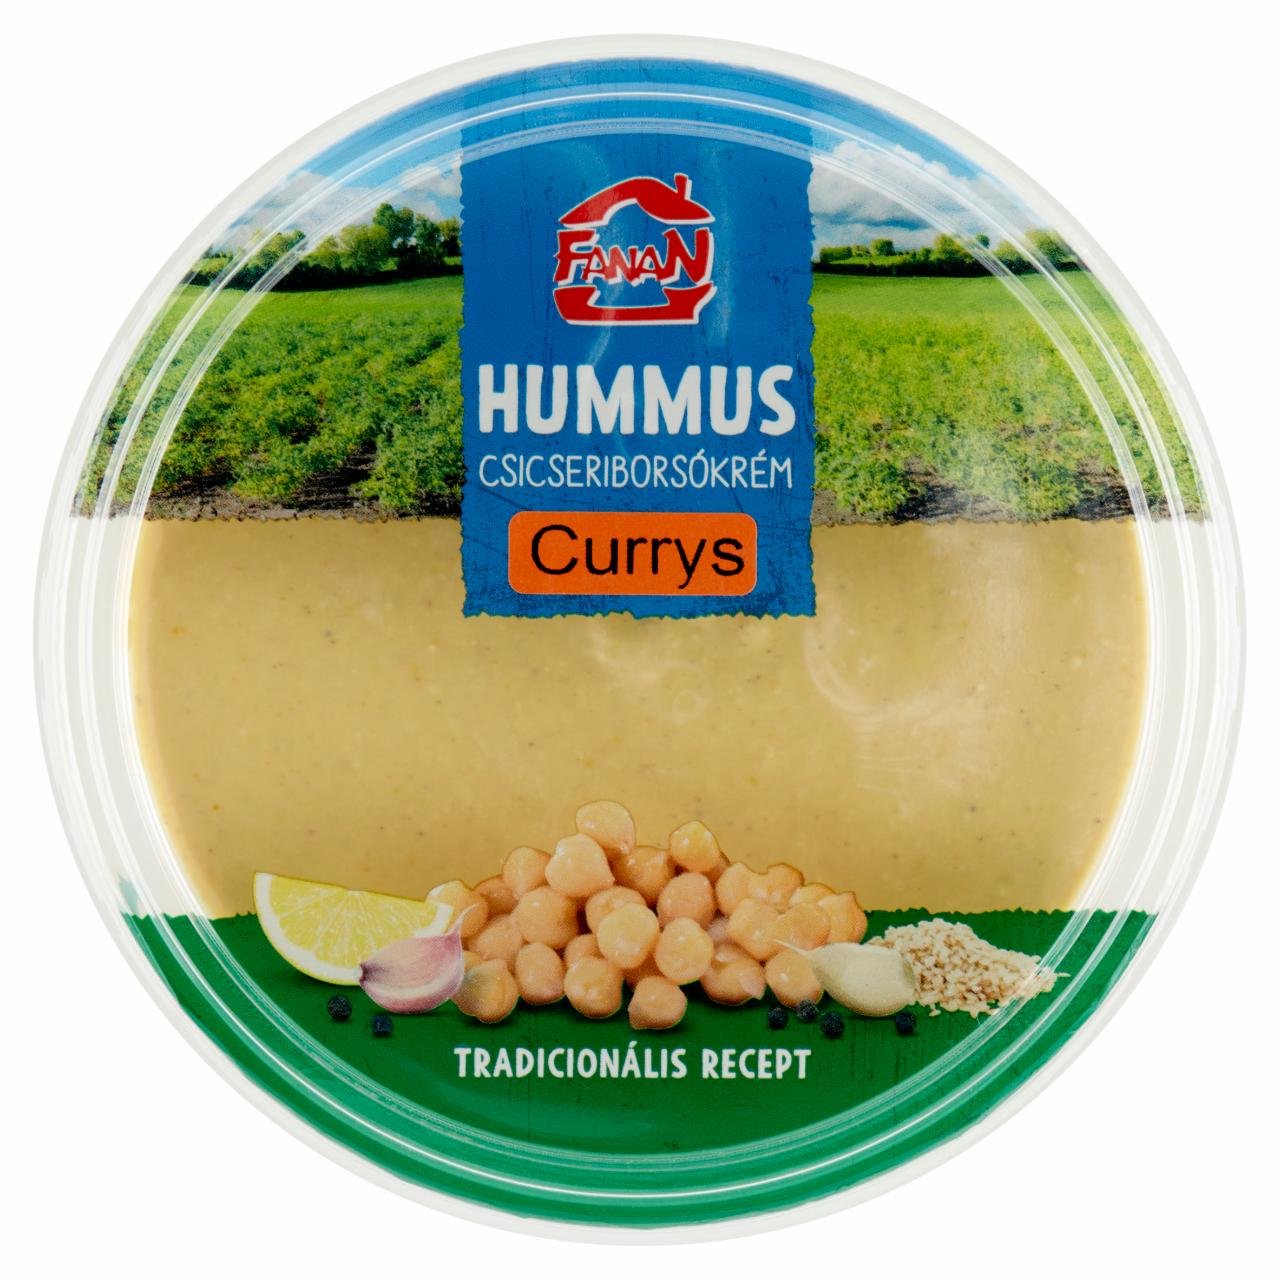 Képek - Fanan hummus currys csicseriborsó krém 250 g